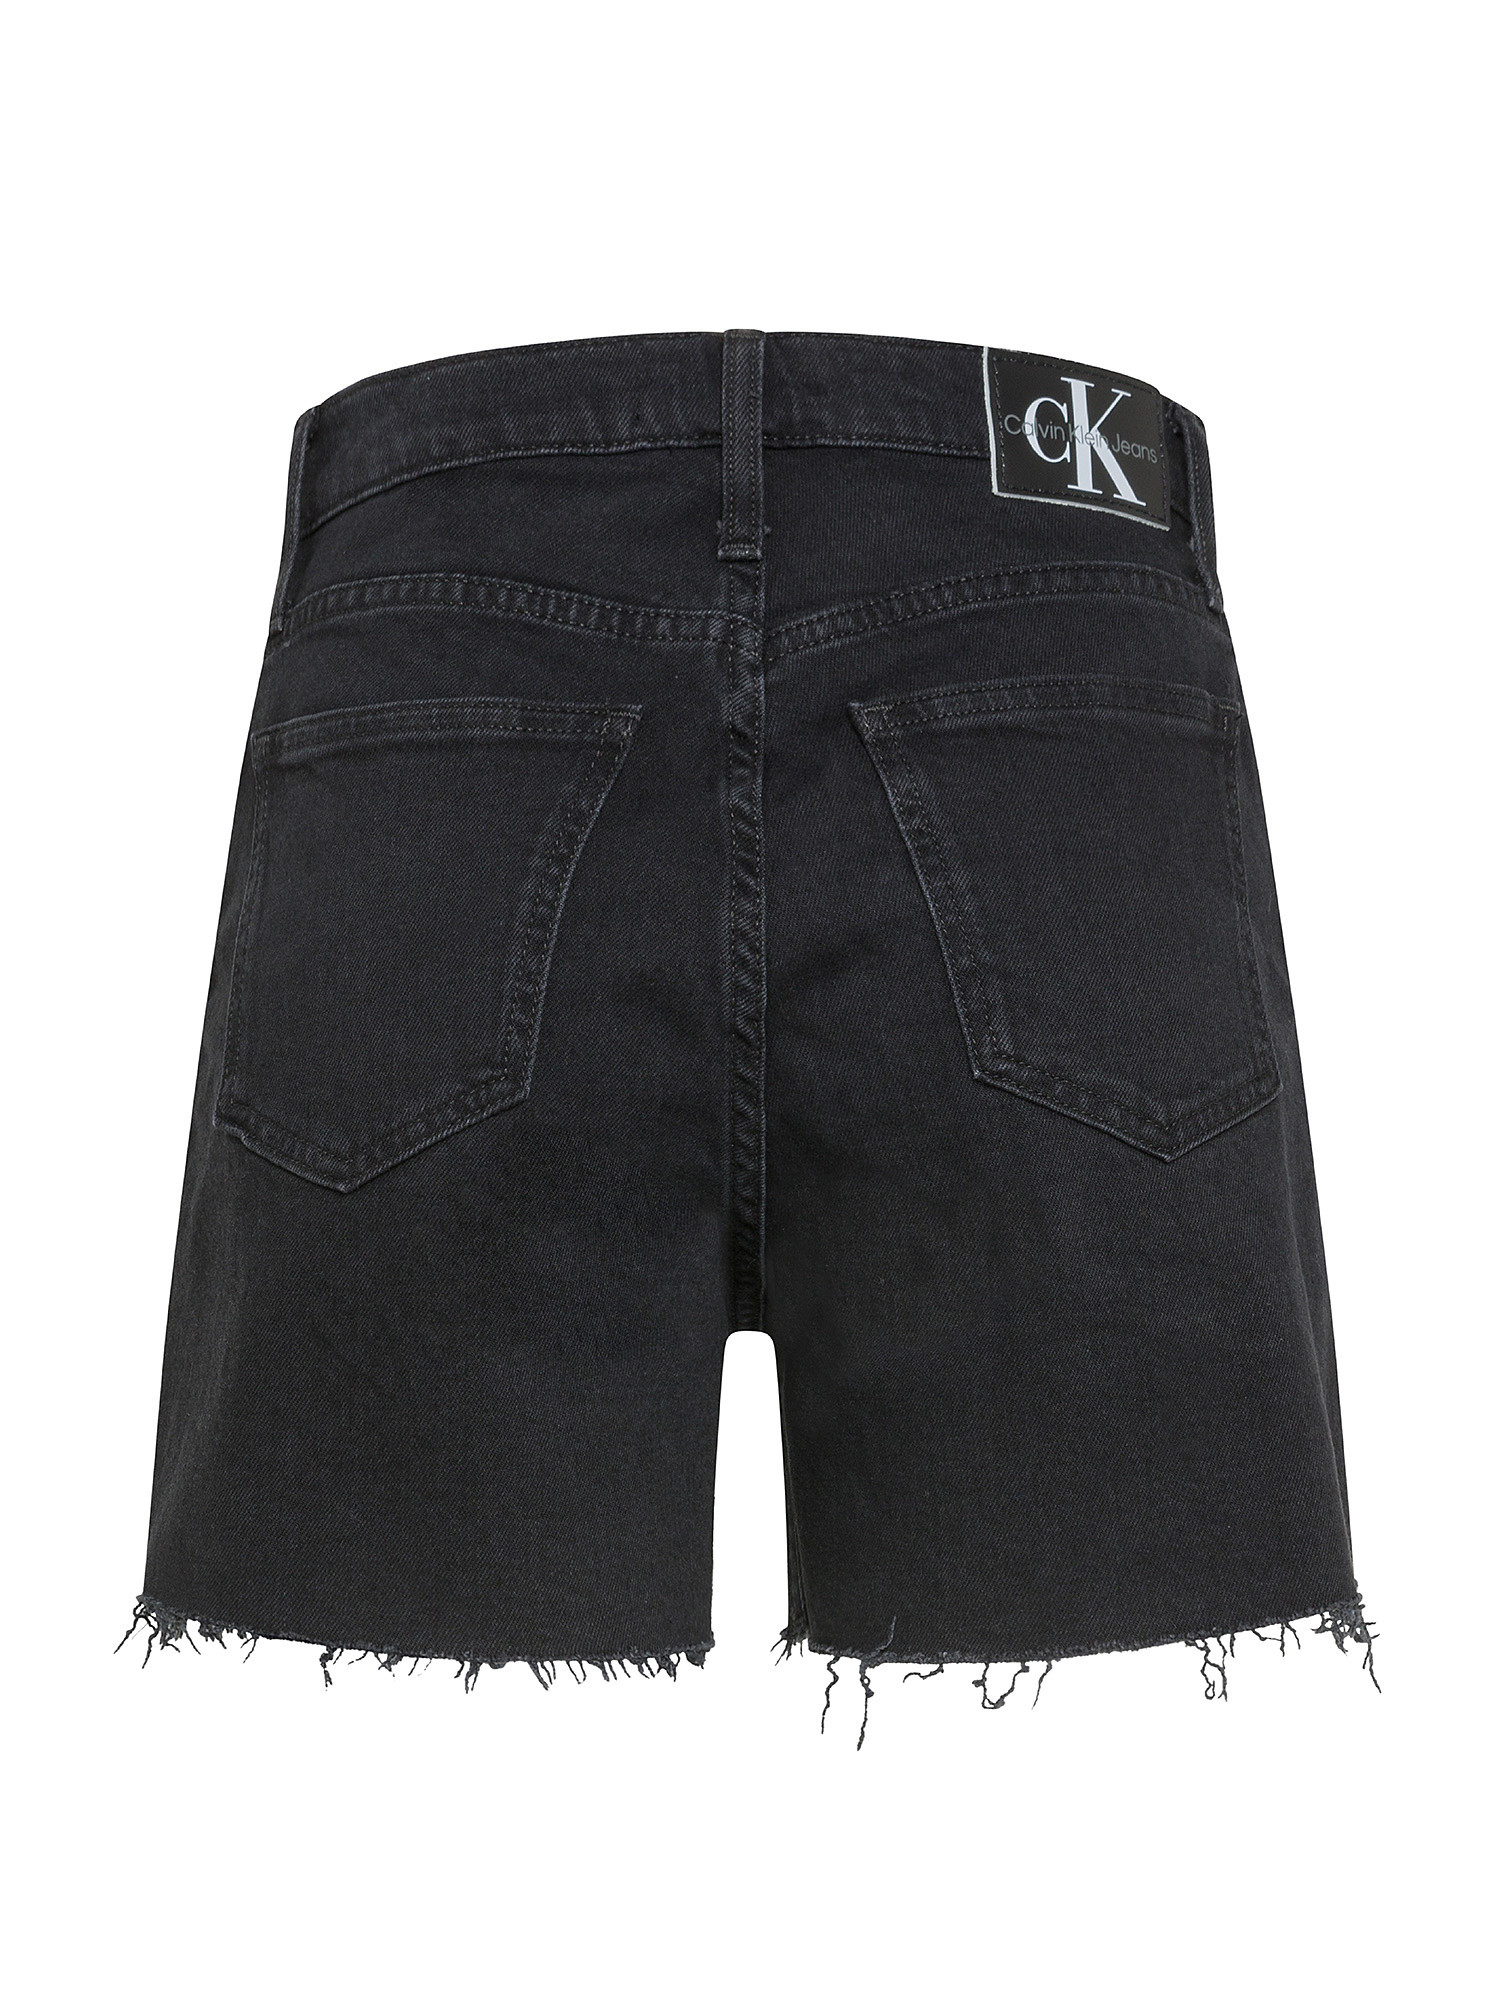 Calvin Klein Jeans - Denim shorts, Black, large image number 1